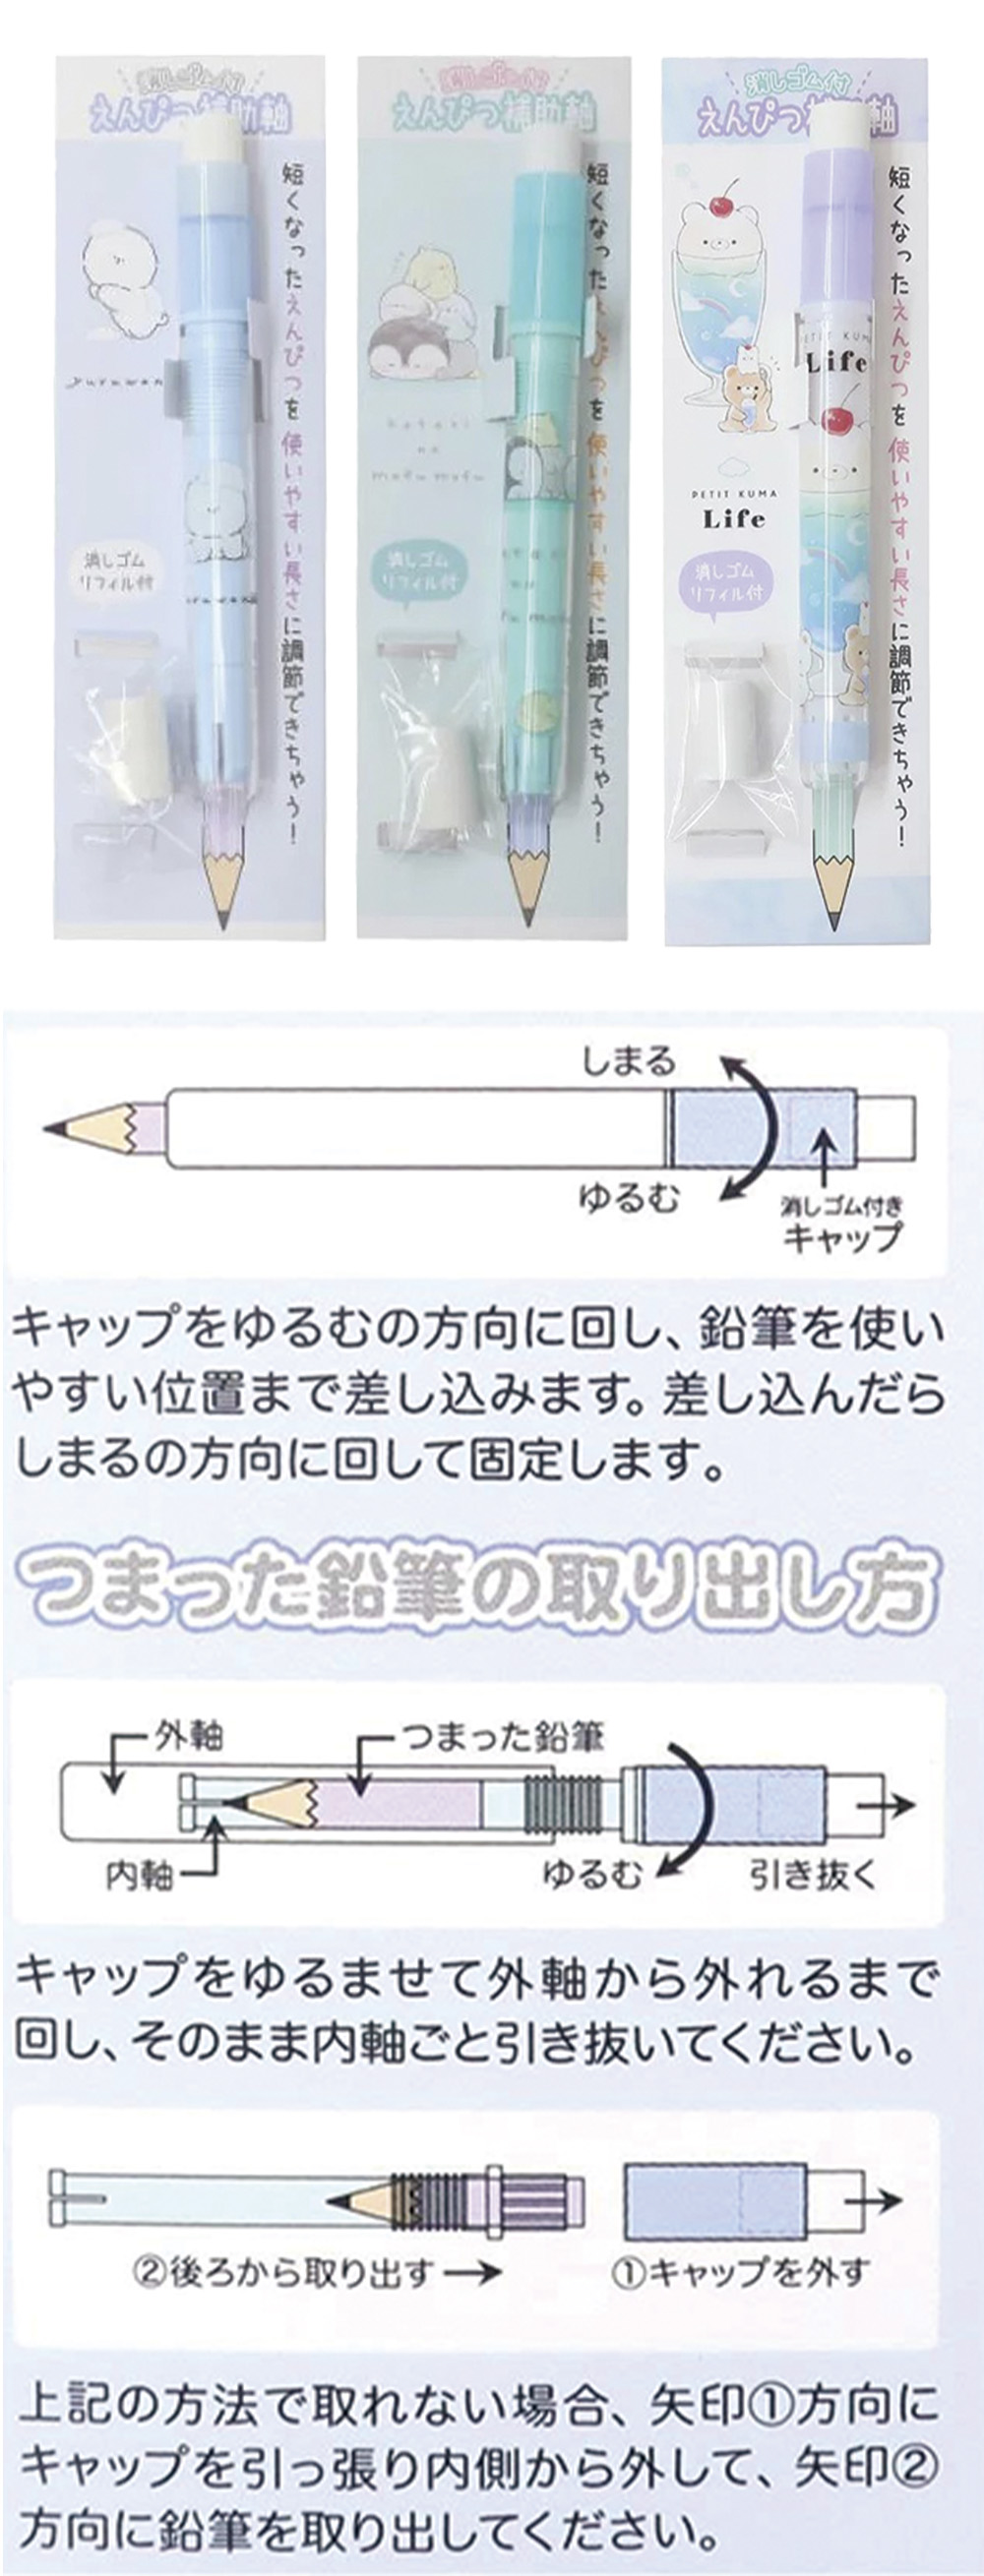 鉛筆 藍色 鉛筆 筆套 綠色 鉛筆